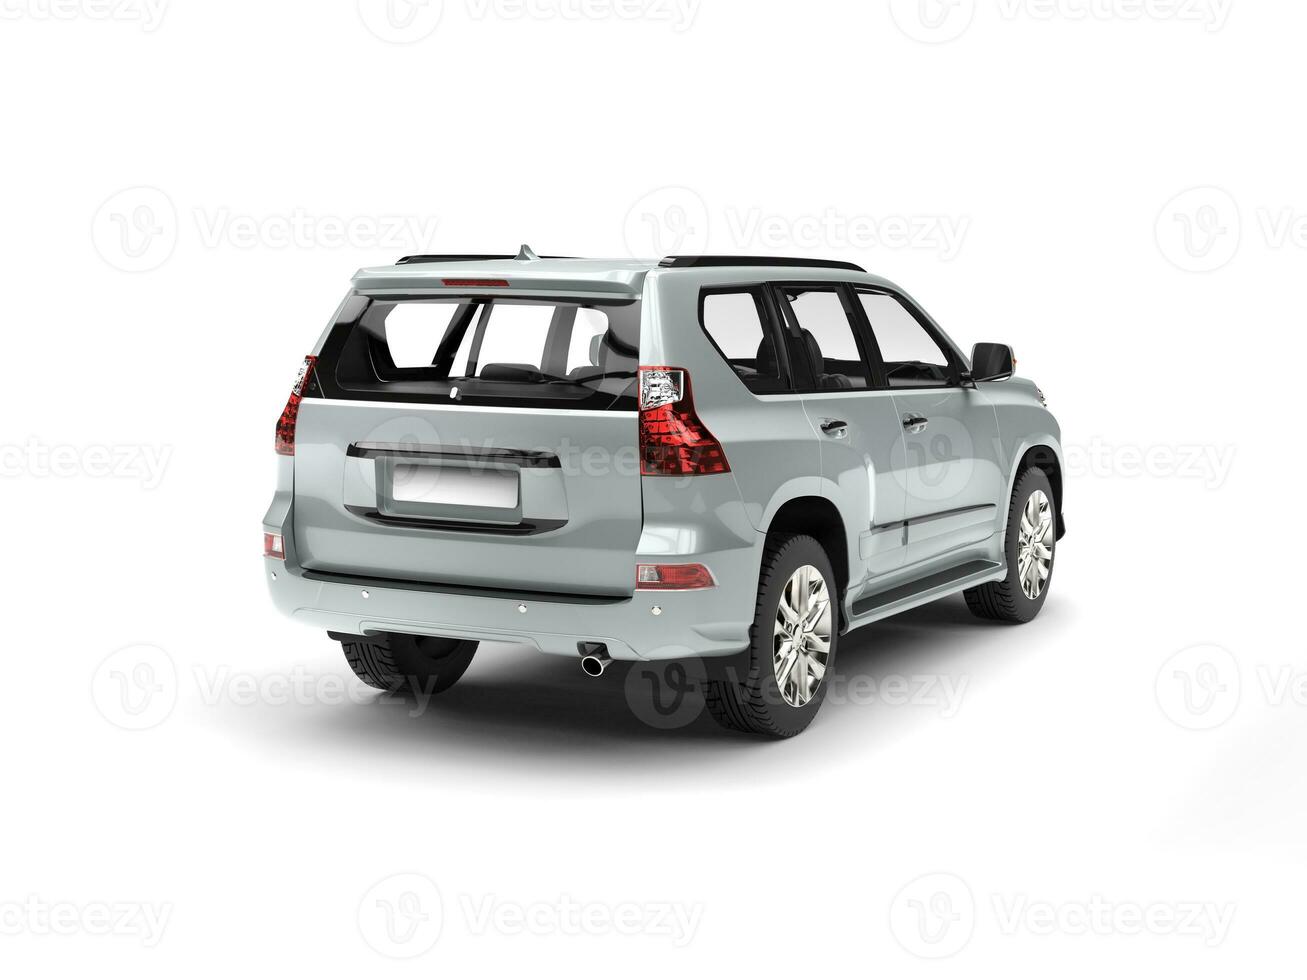 Modern urban silver SUV - tail view photo